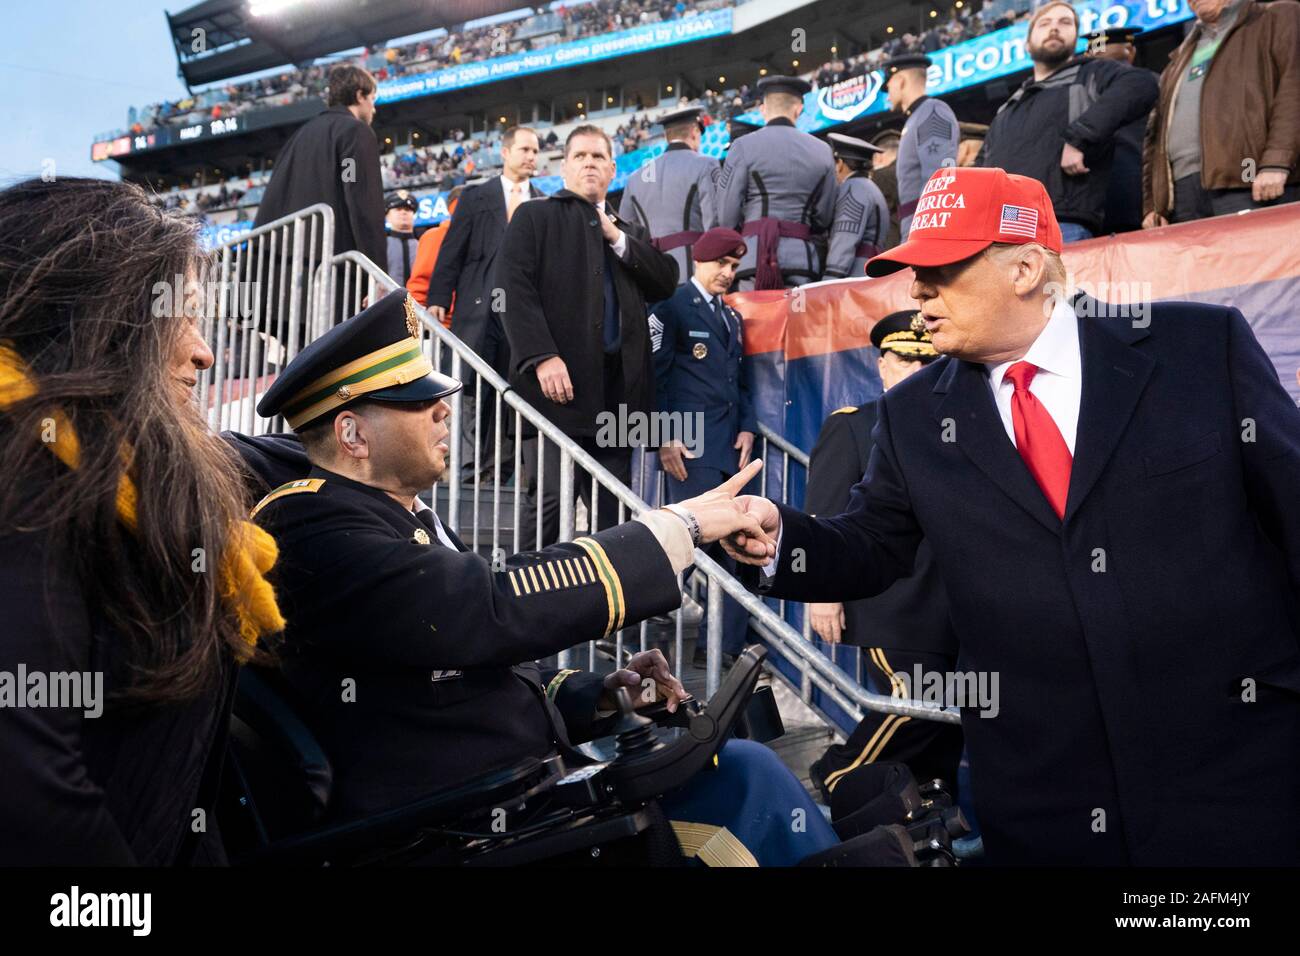 El Presidente de Estados Unidos, Donald saluda a los fans del ejército en la 120ª Army-Navy juego de fútbol en el Lincoln Financial Field el 14 de diciembre de 2019 en Filadelfia, Pensilvania. Marina reclama el título superando 31-7 del Ejército. Foto de stock